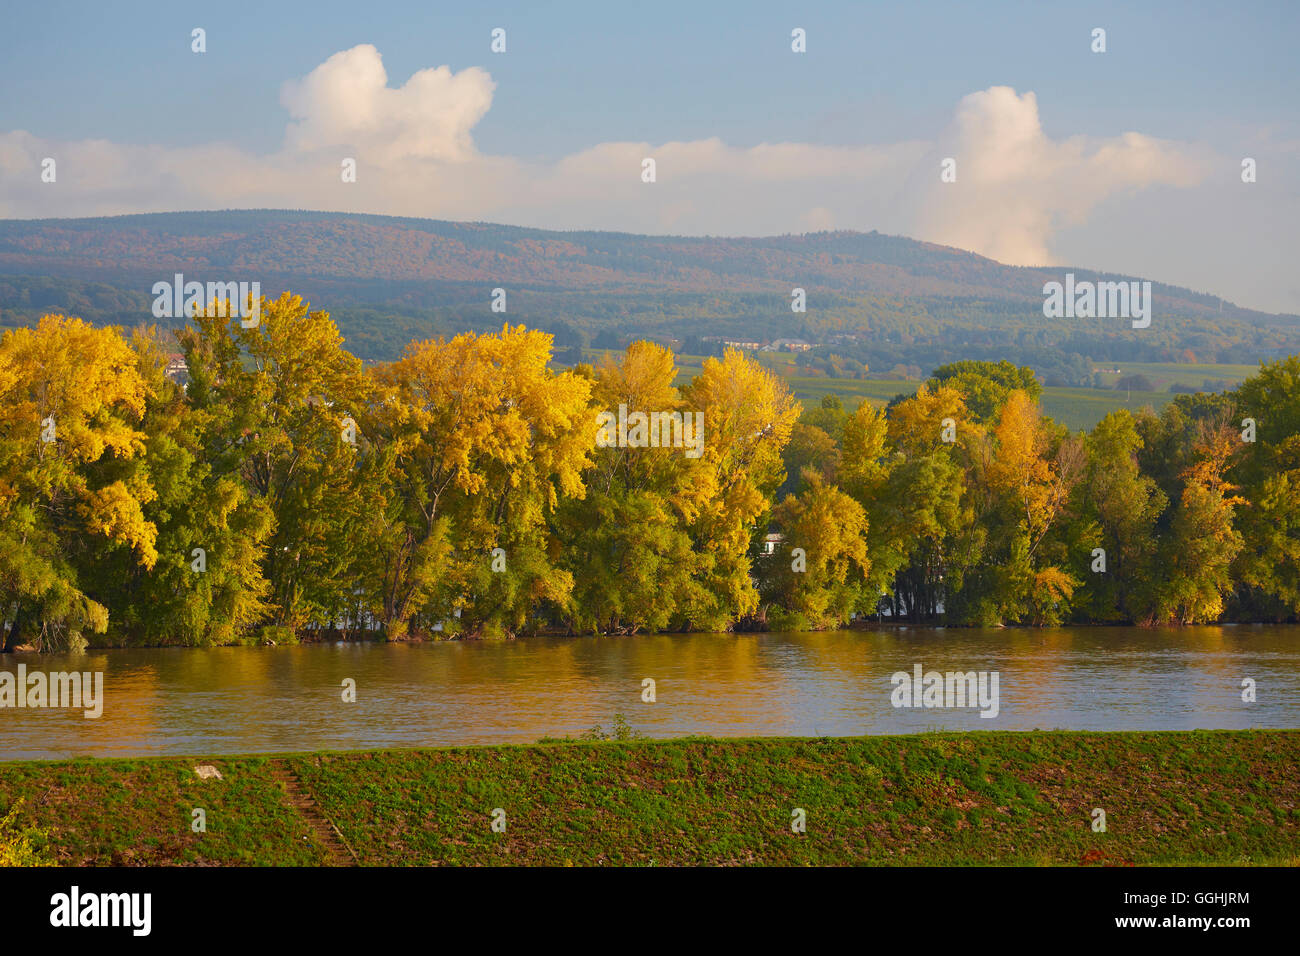 Vue sur le Rhin d'arbres avec des teintes automnales, Rudesheim, Mittelrhein, Rhin moyen, Hesse, Germany, Europe Banque D'Images